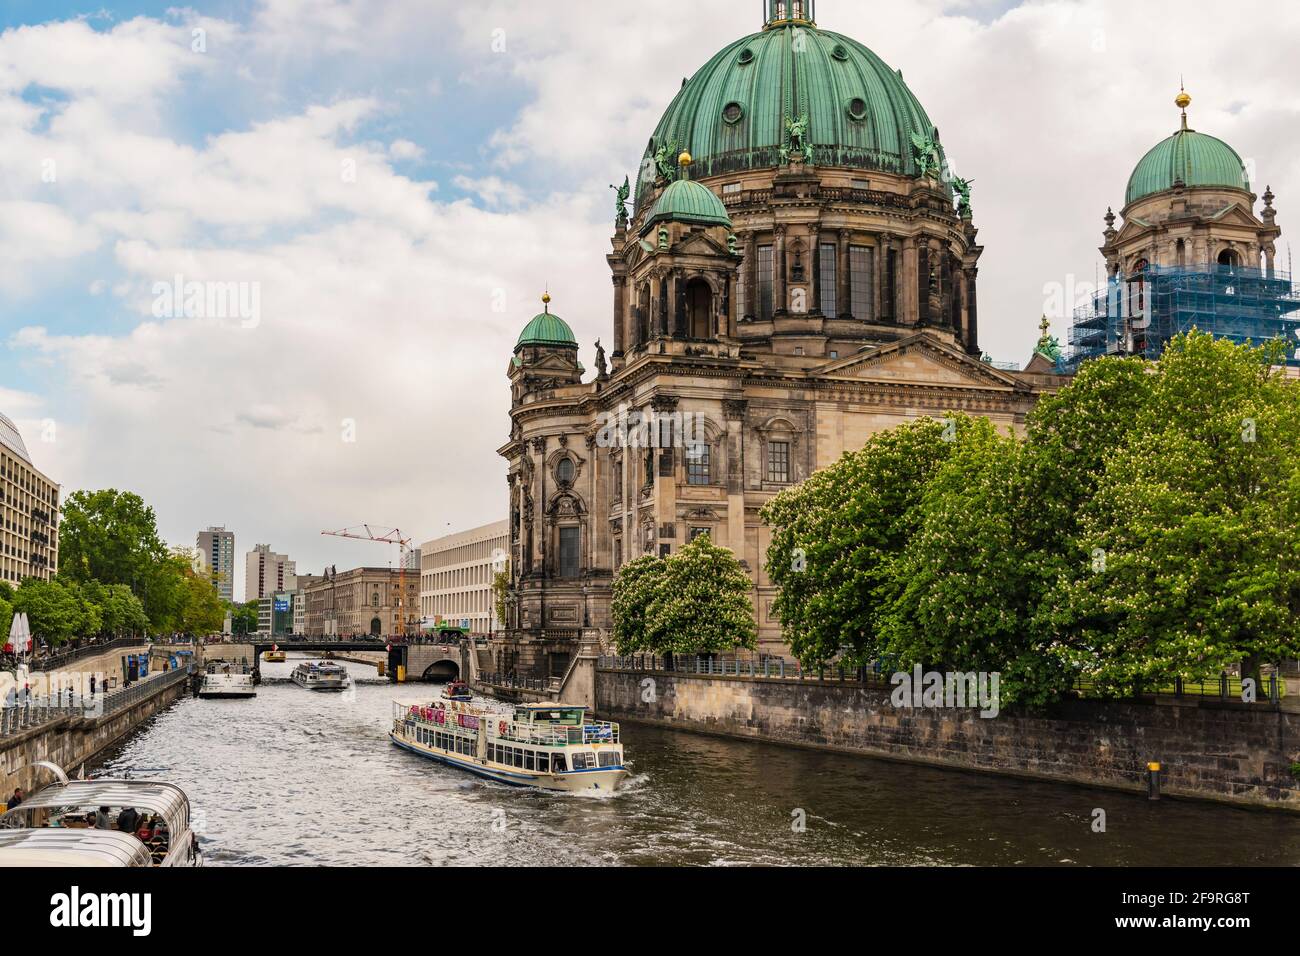 13 maggio 2019 Berlino, Germania - splendida vista della storica Cattedrale di Berlino (Berliner Dom) presso il famoso Museumsinsel (Isola dei Musei) con barca da escursione Foto Stock